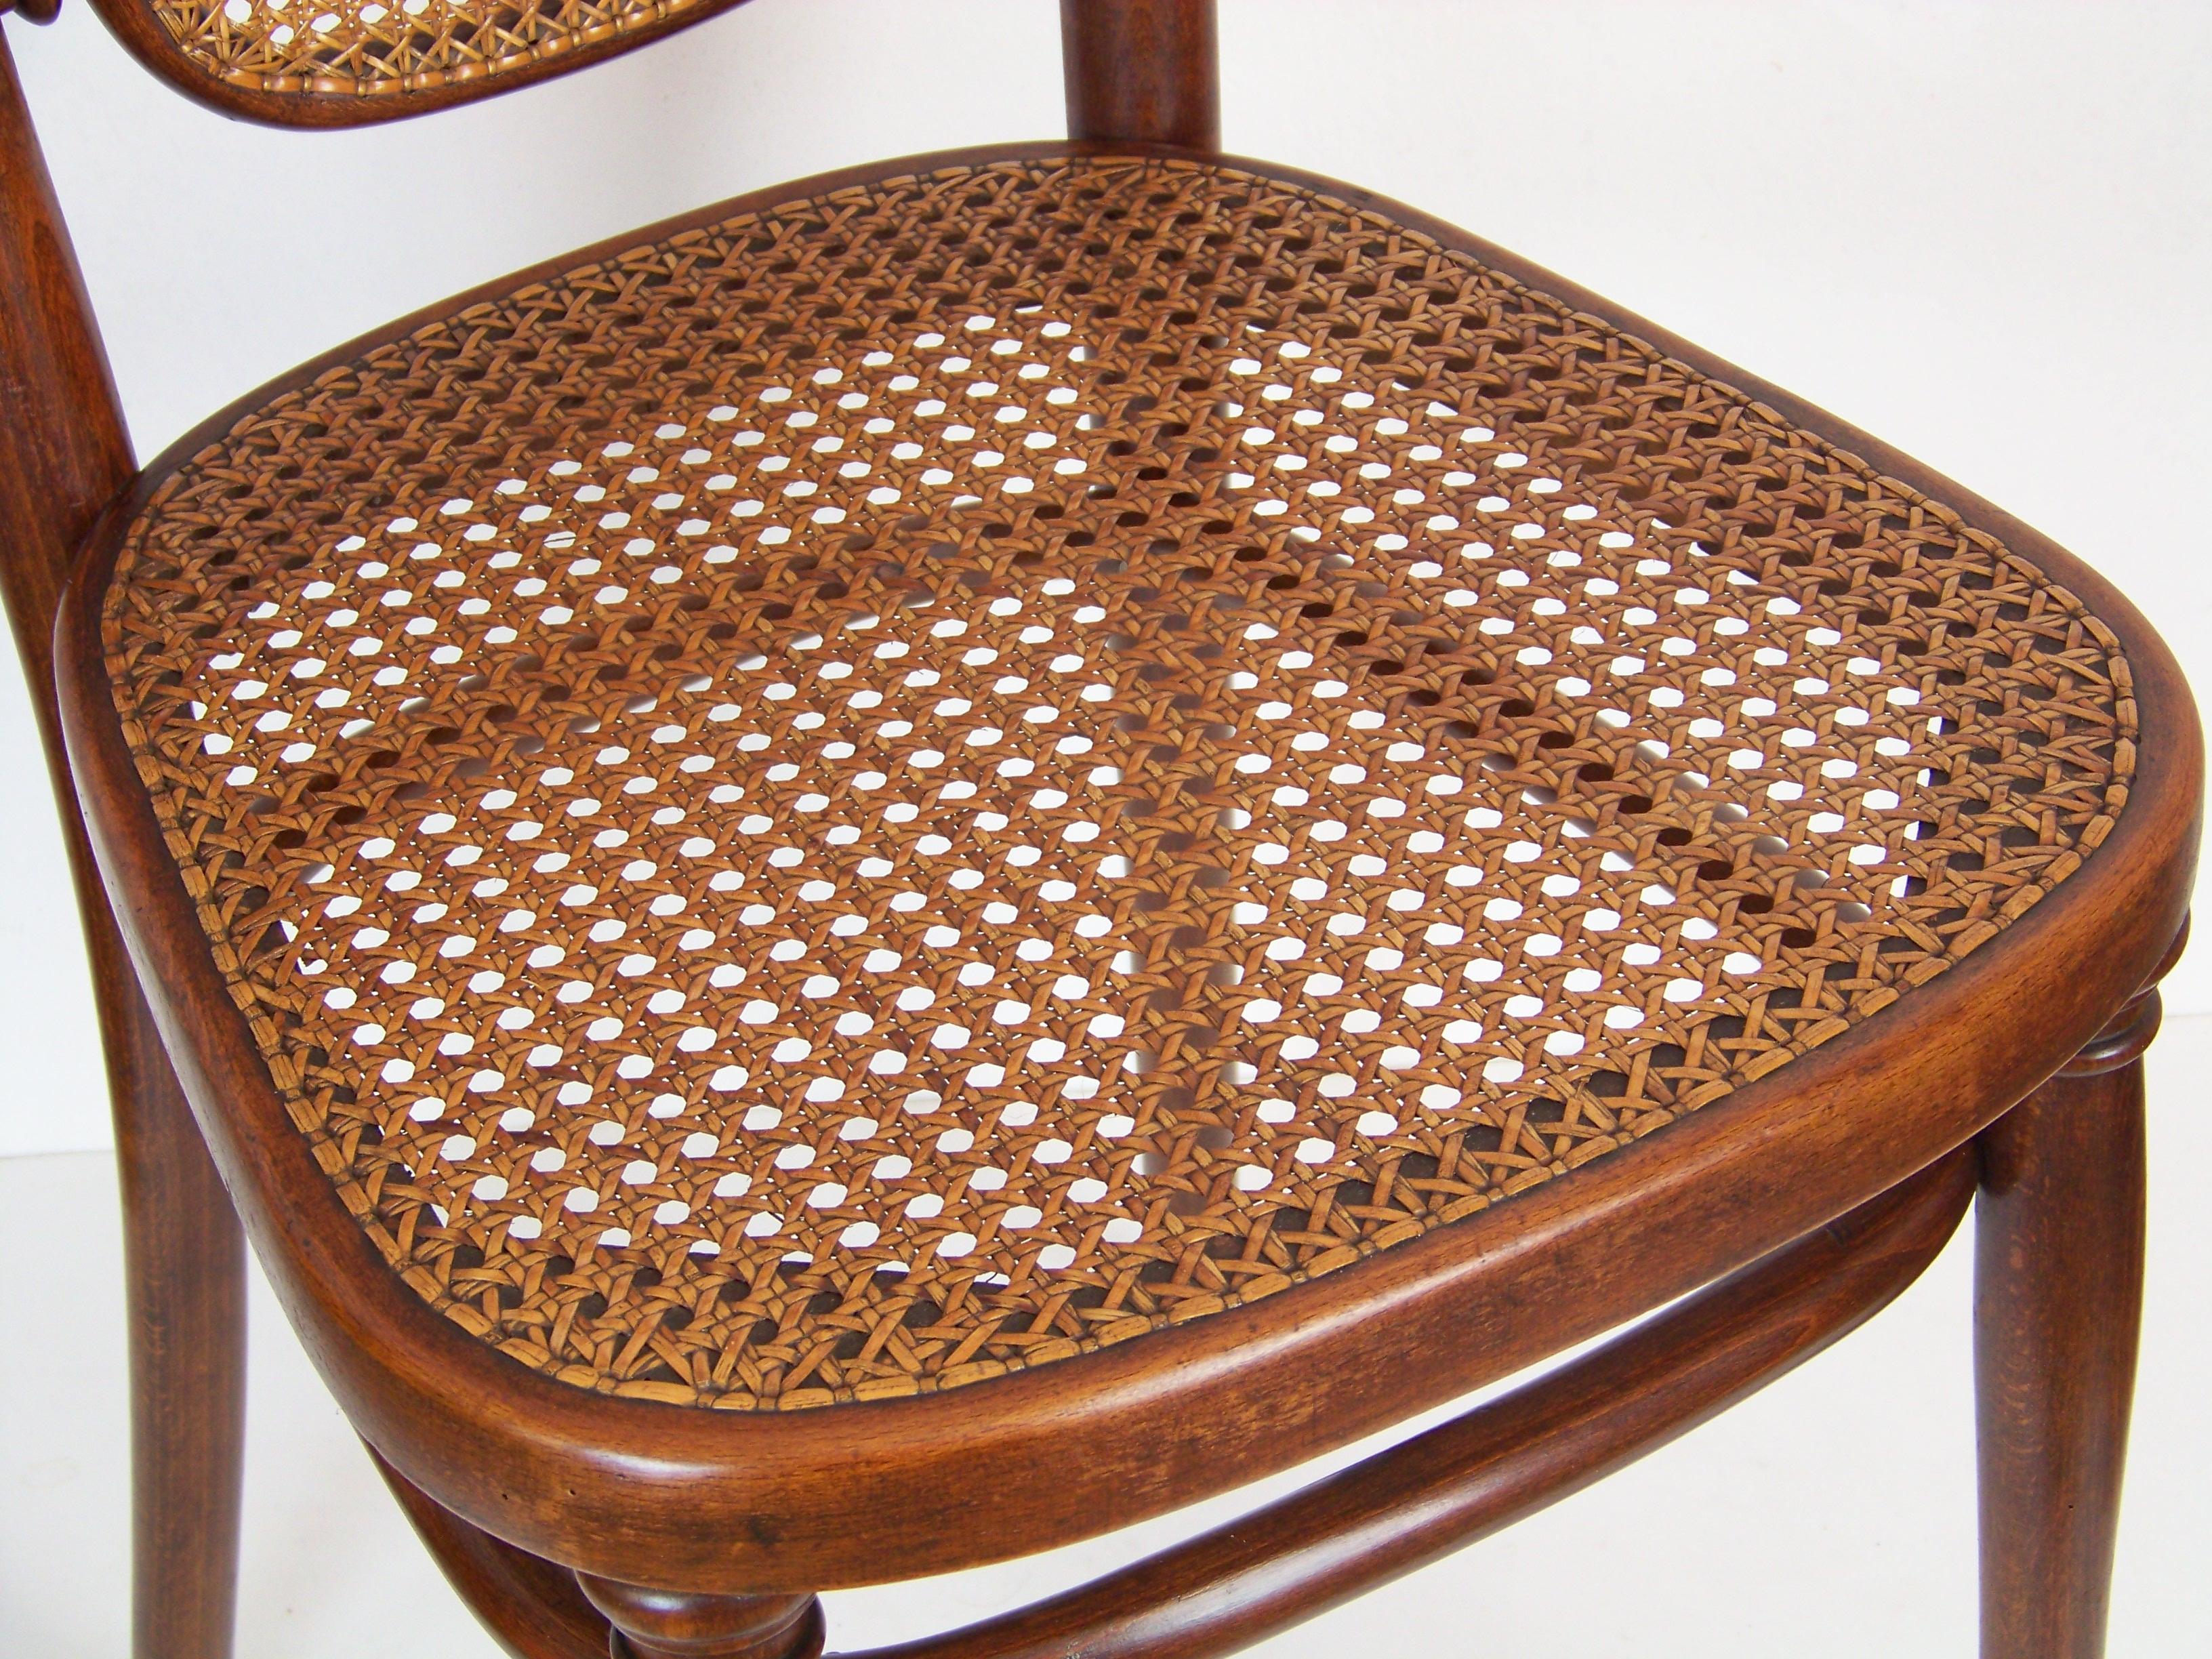 Chair Thonet Nr. 183, since 1895 1